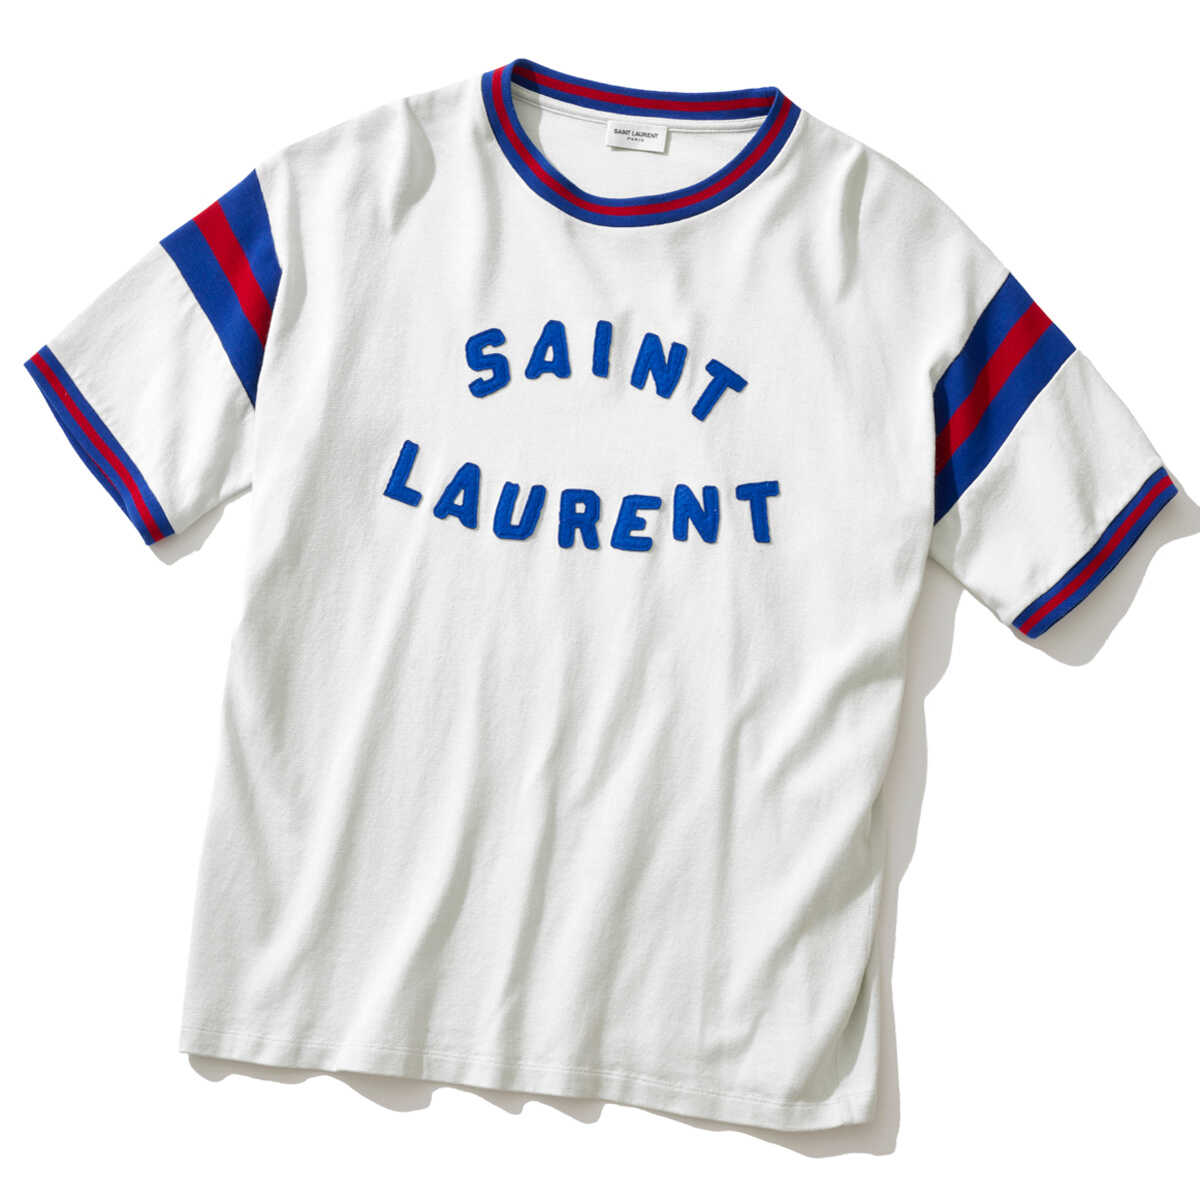 Saint Laurent リバースTシャツ ローエッジトリム